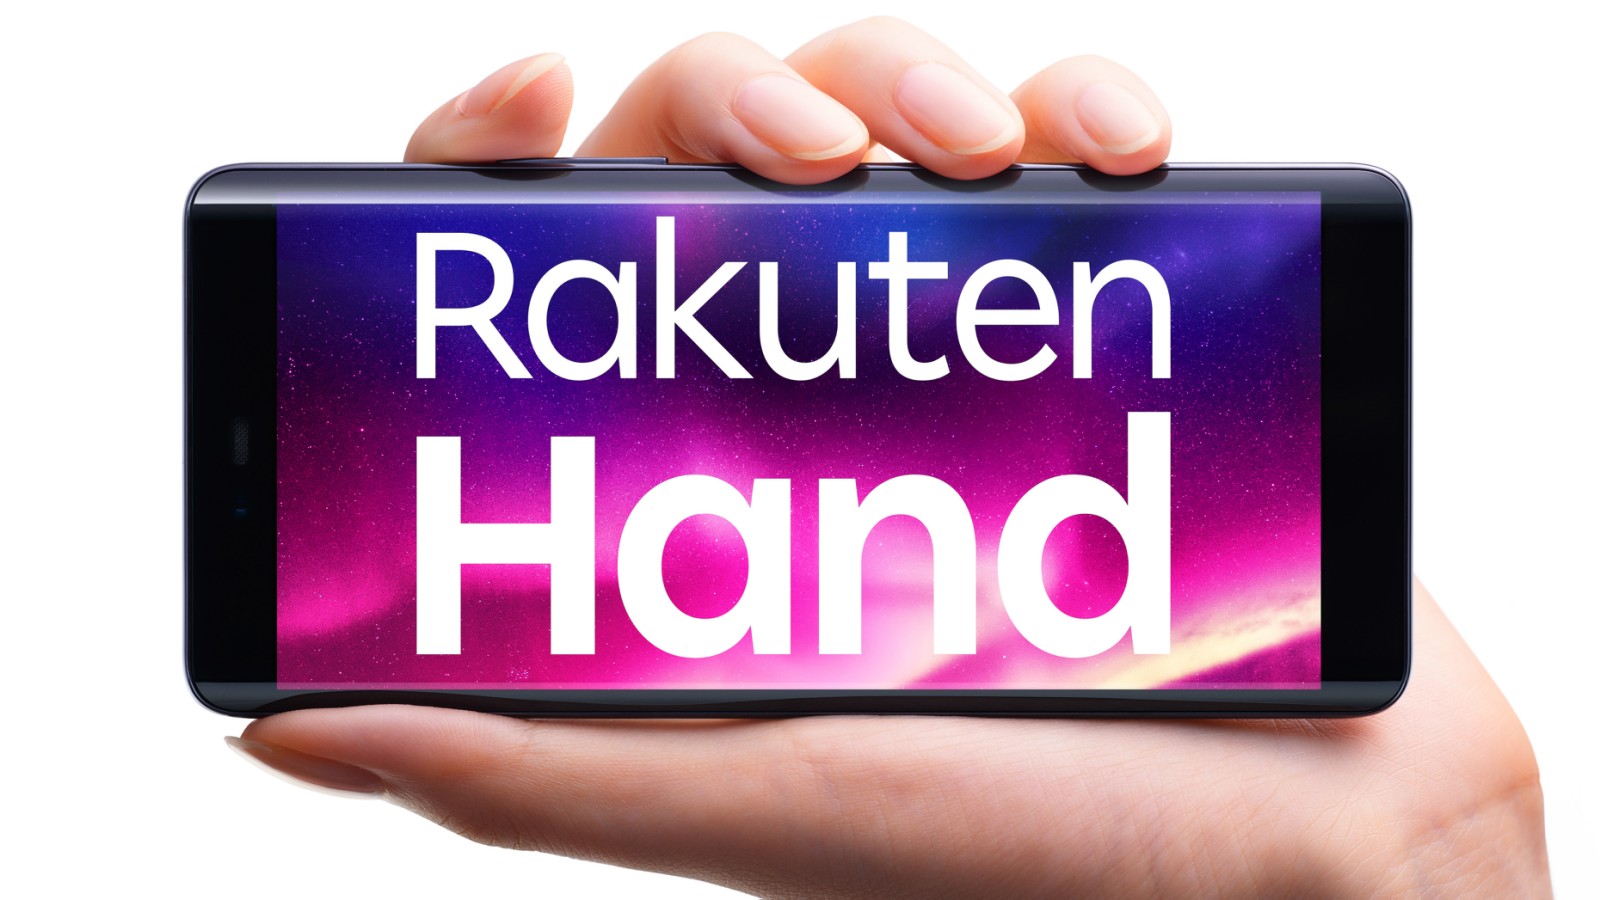 楽天モバイル 片手での操作に最適なオリジナルスマートフォン Rakuten Hand を本日より発売 報道機関へのお知らせ 楽天モバイル株式会社